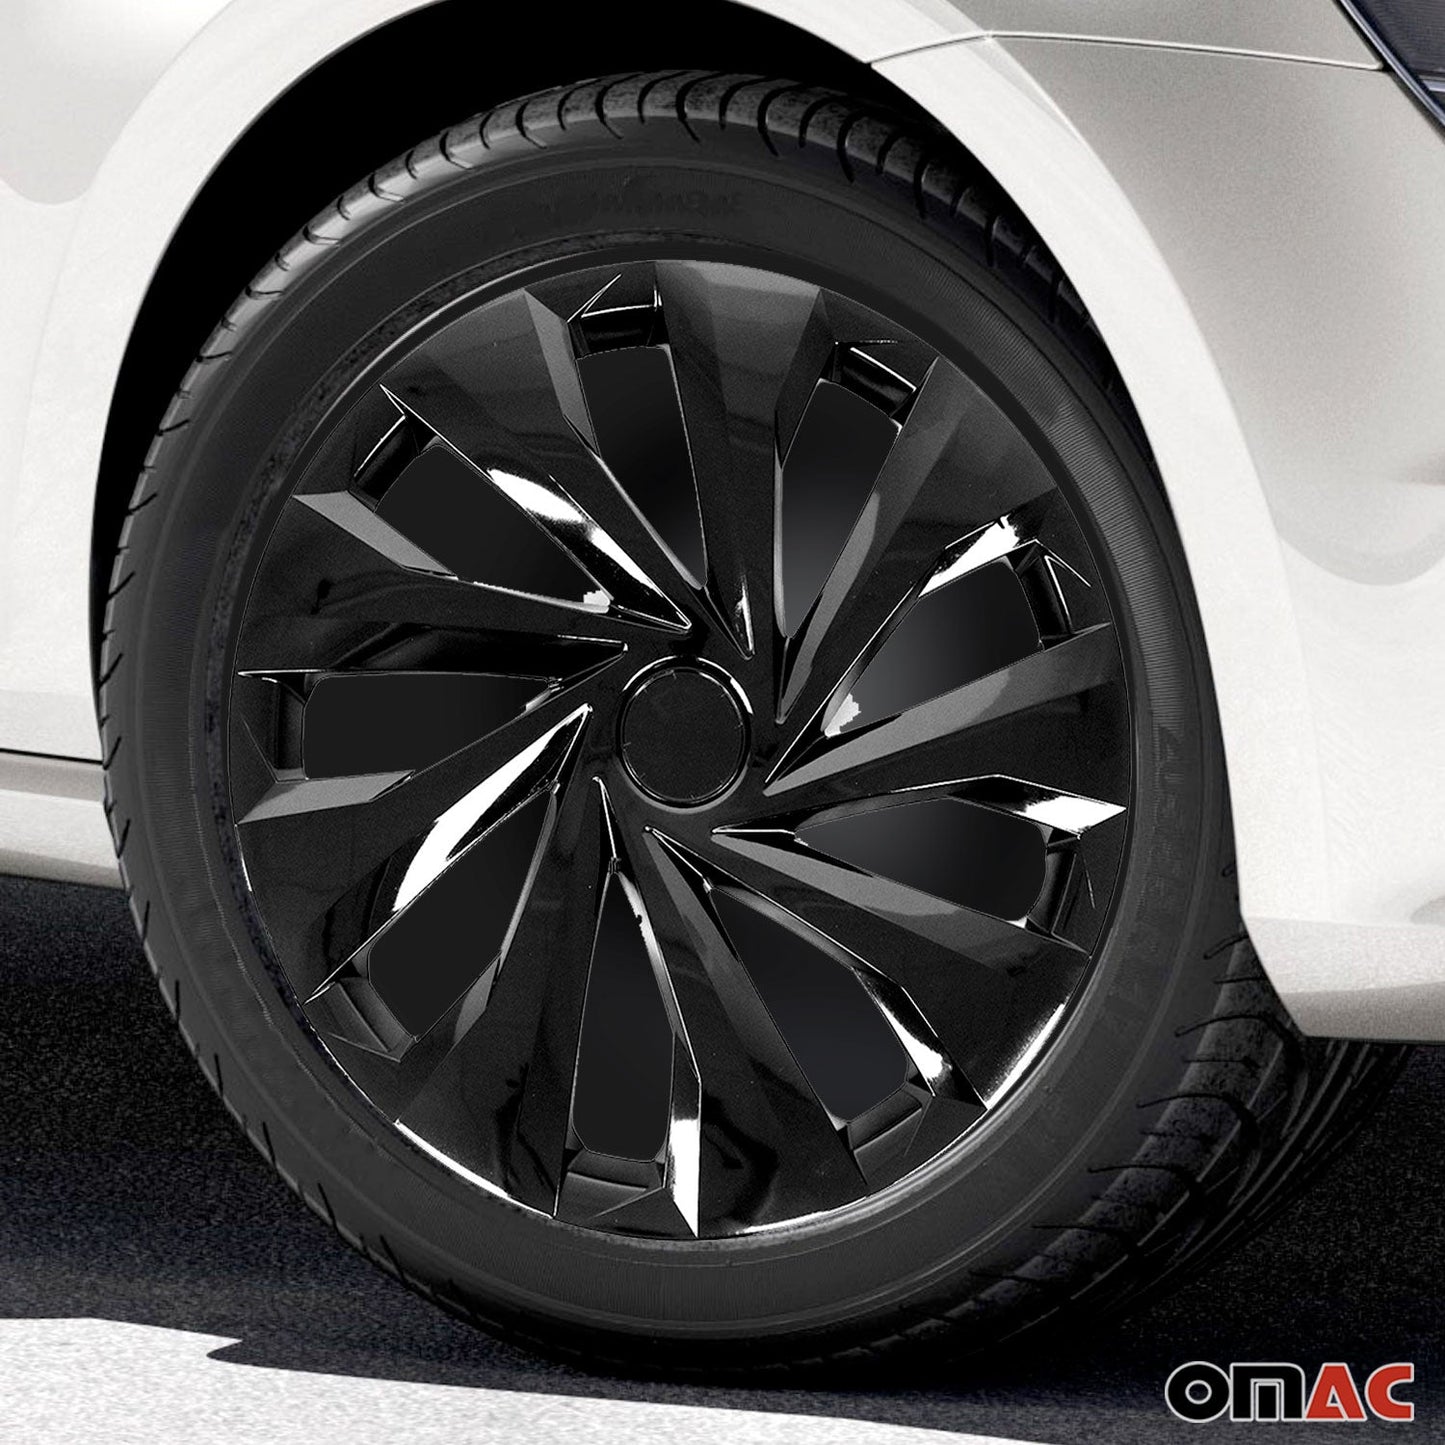 OMAC 15 Inch Wheel Rim Covers Hubcaps for Chrysler Black Gloss G002453